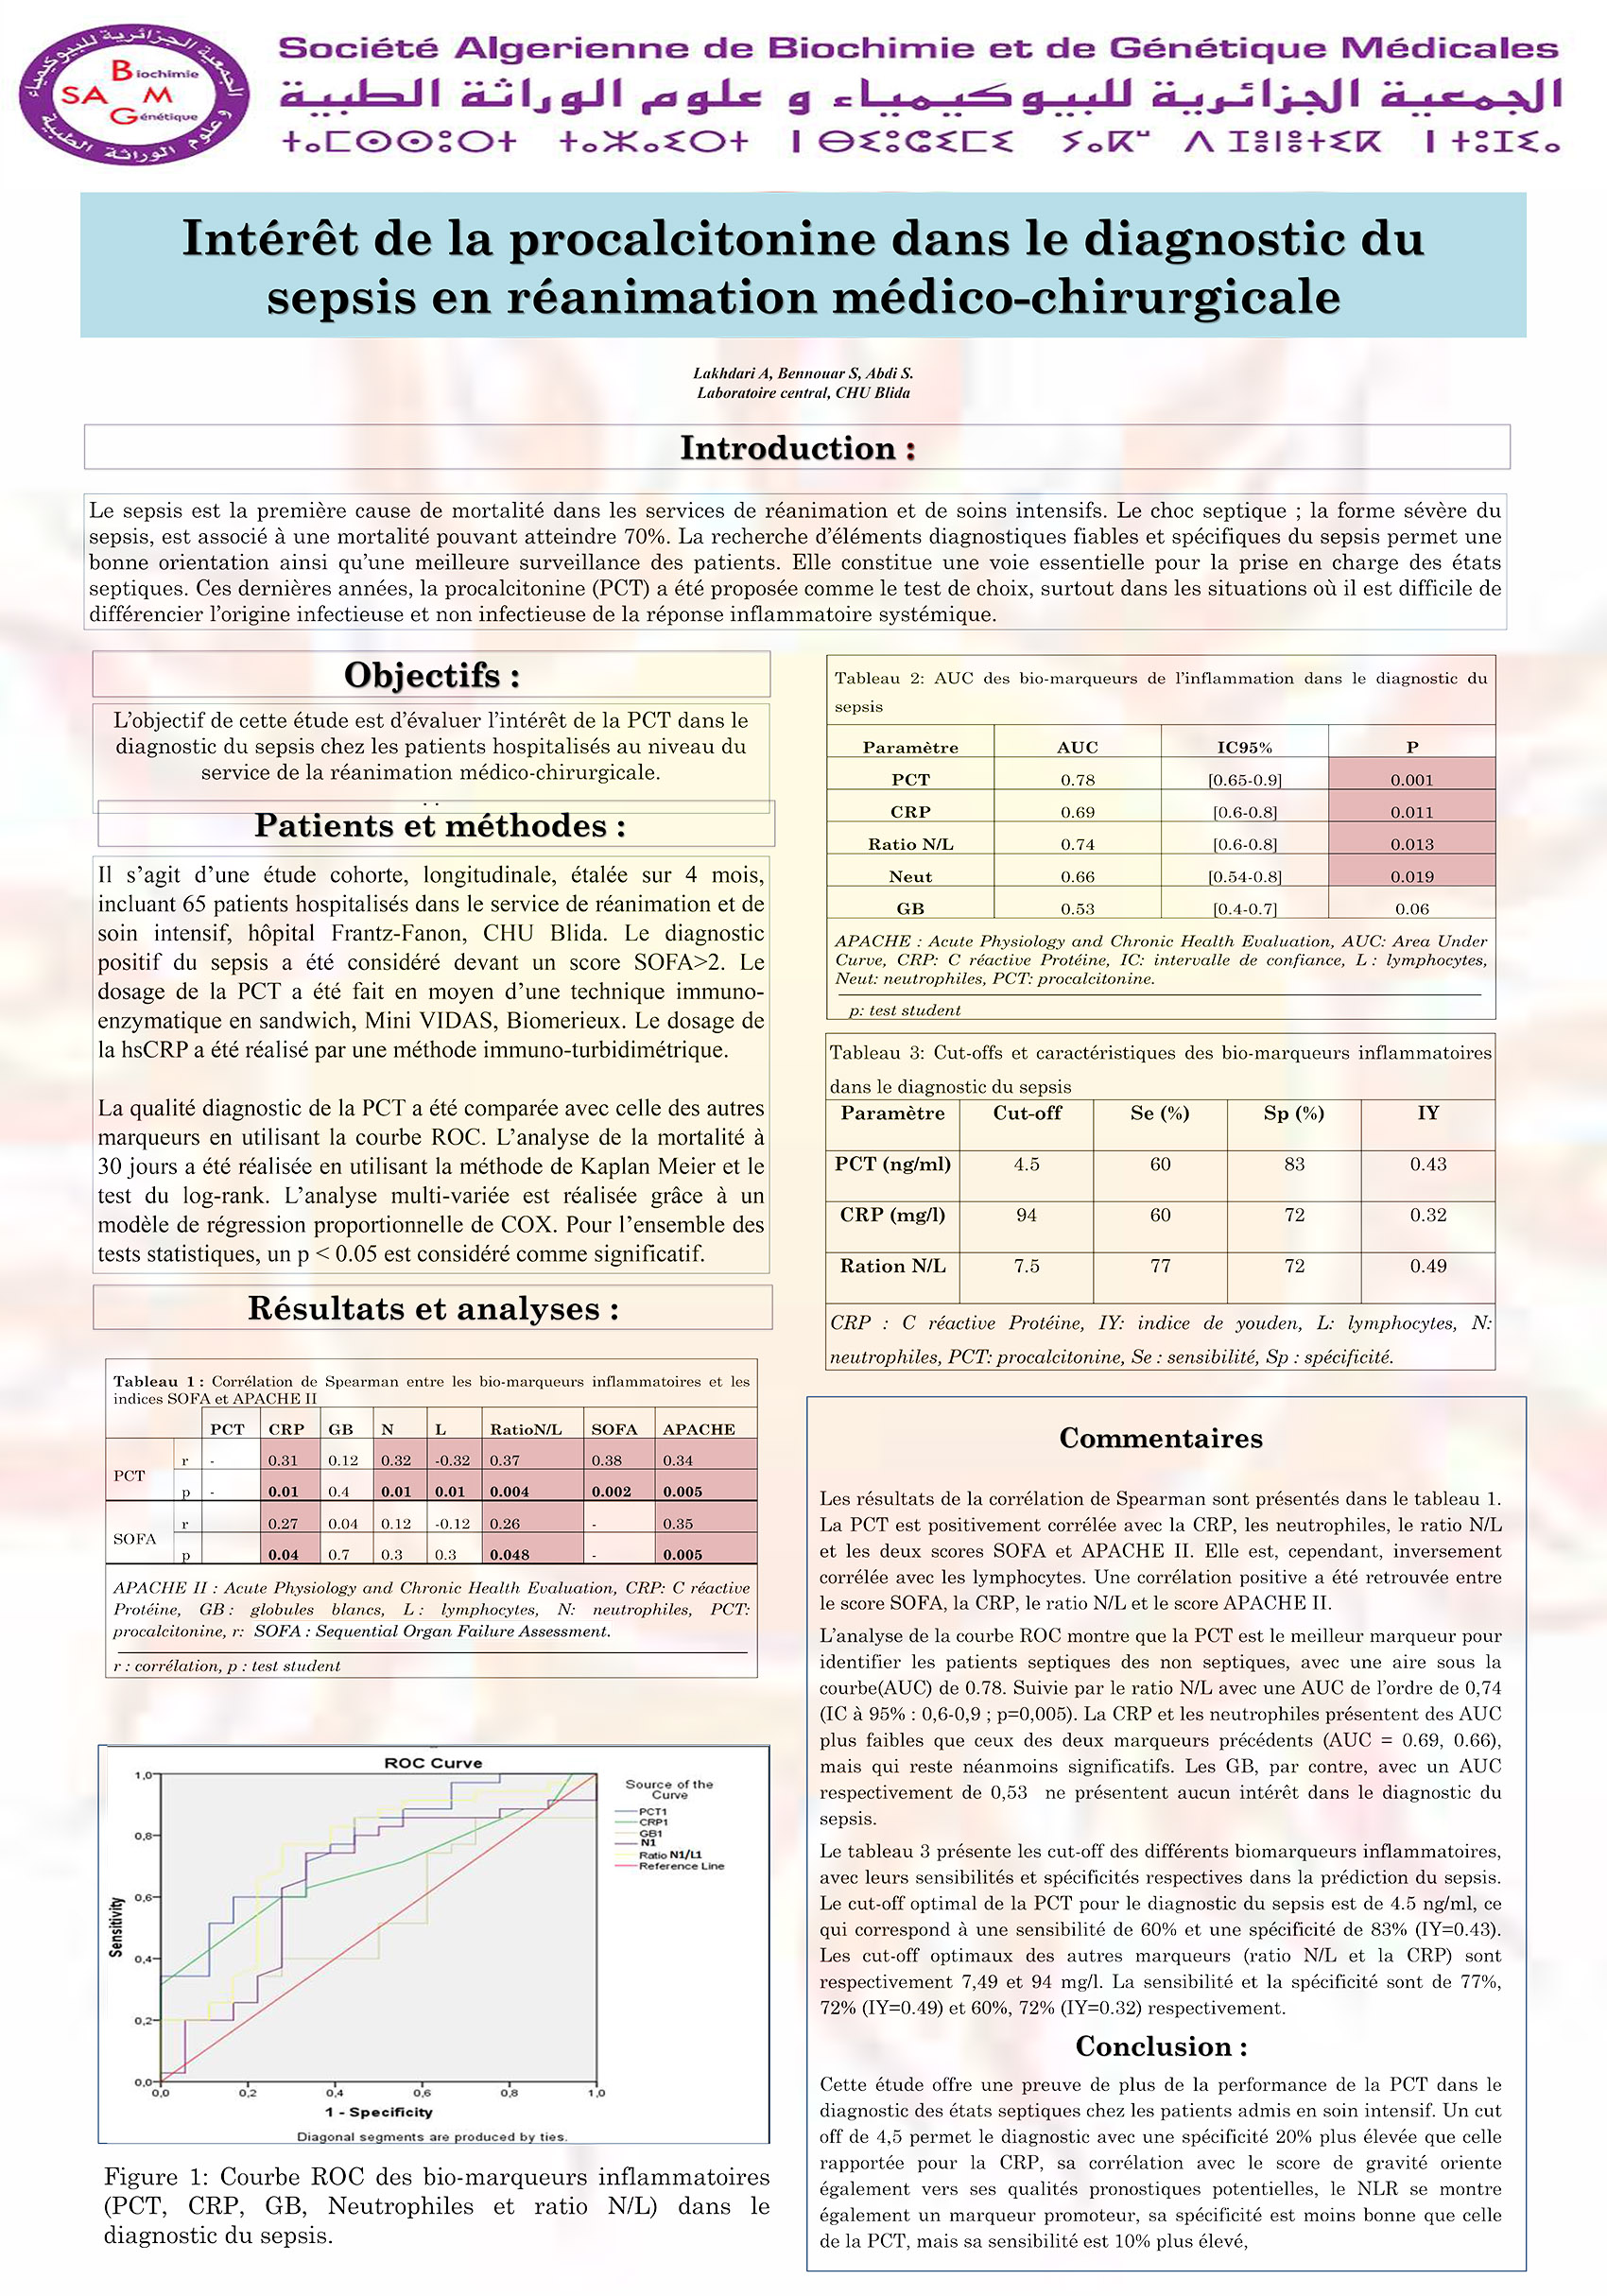 P65 : Intérêt de la procalcitonine dans le diagnostic du sepsis en réanimation médico-chirurgicale